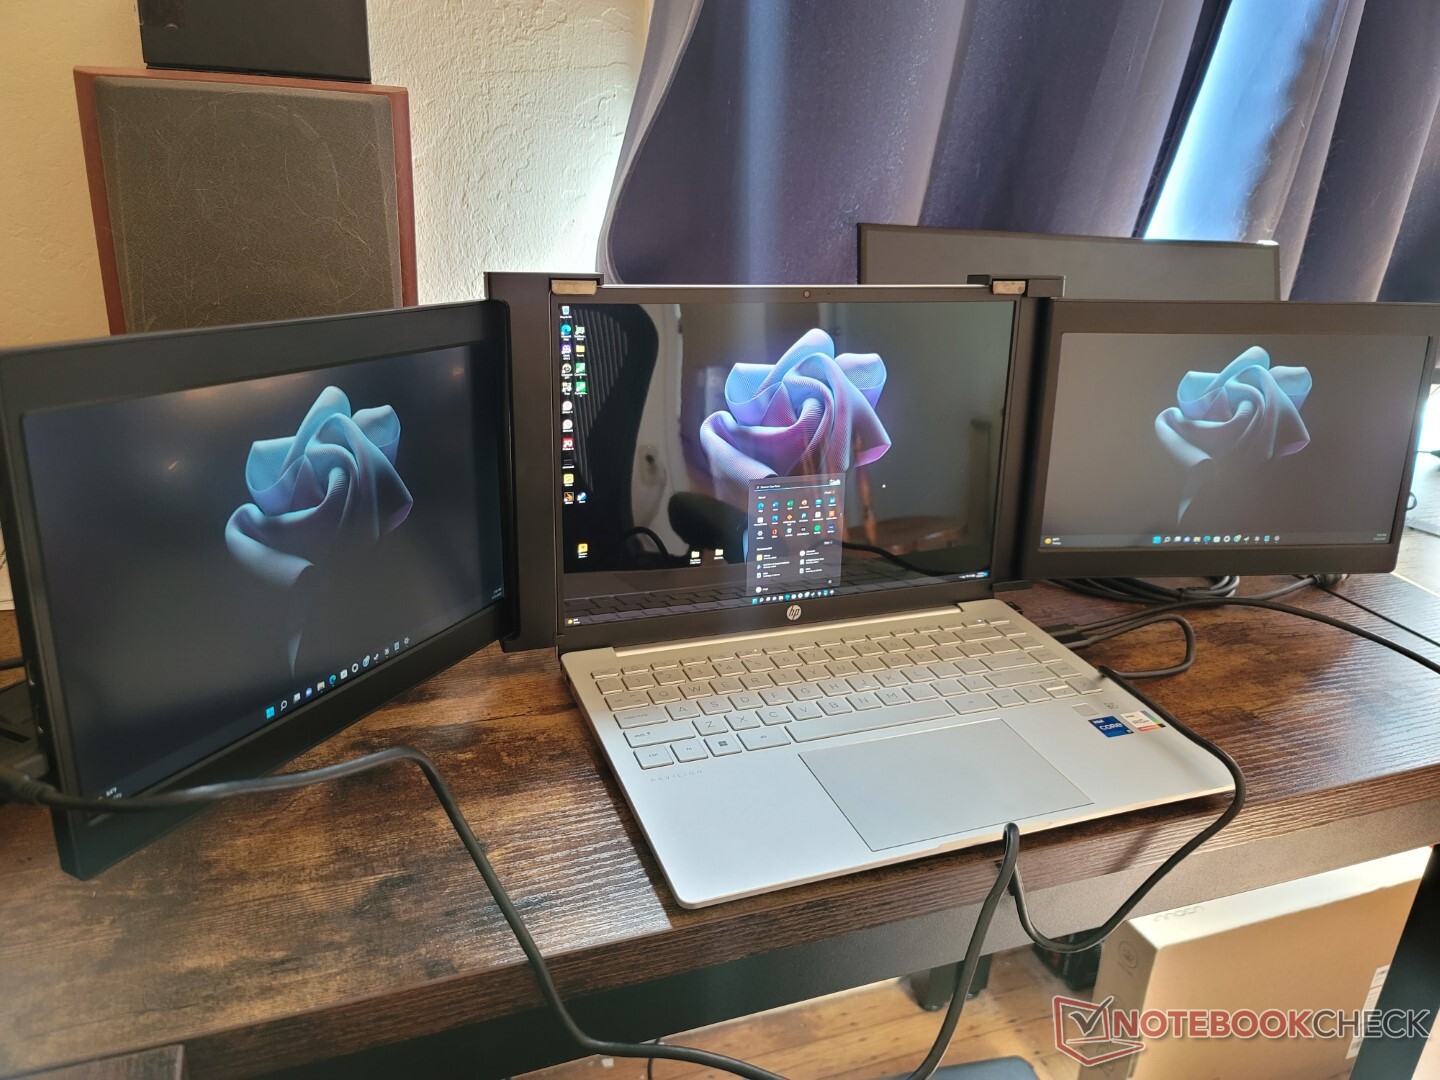 FOPO Extensor de monitor para laptop de 15 pulgadas, monitor triple más  grande para laptop de 15 a 17.3 pulgadas, extensor de monitor de tres